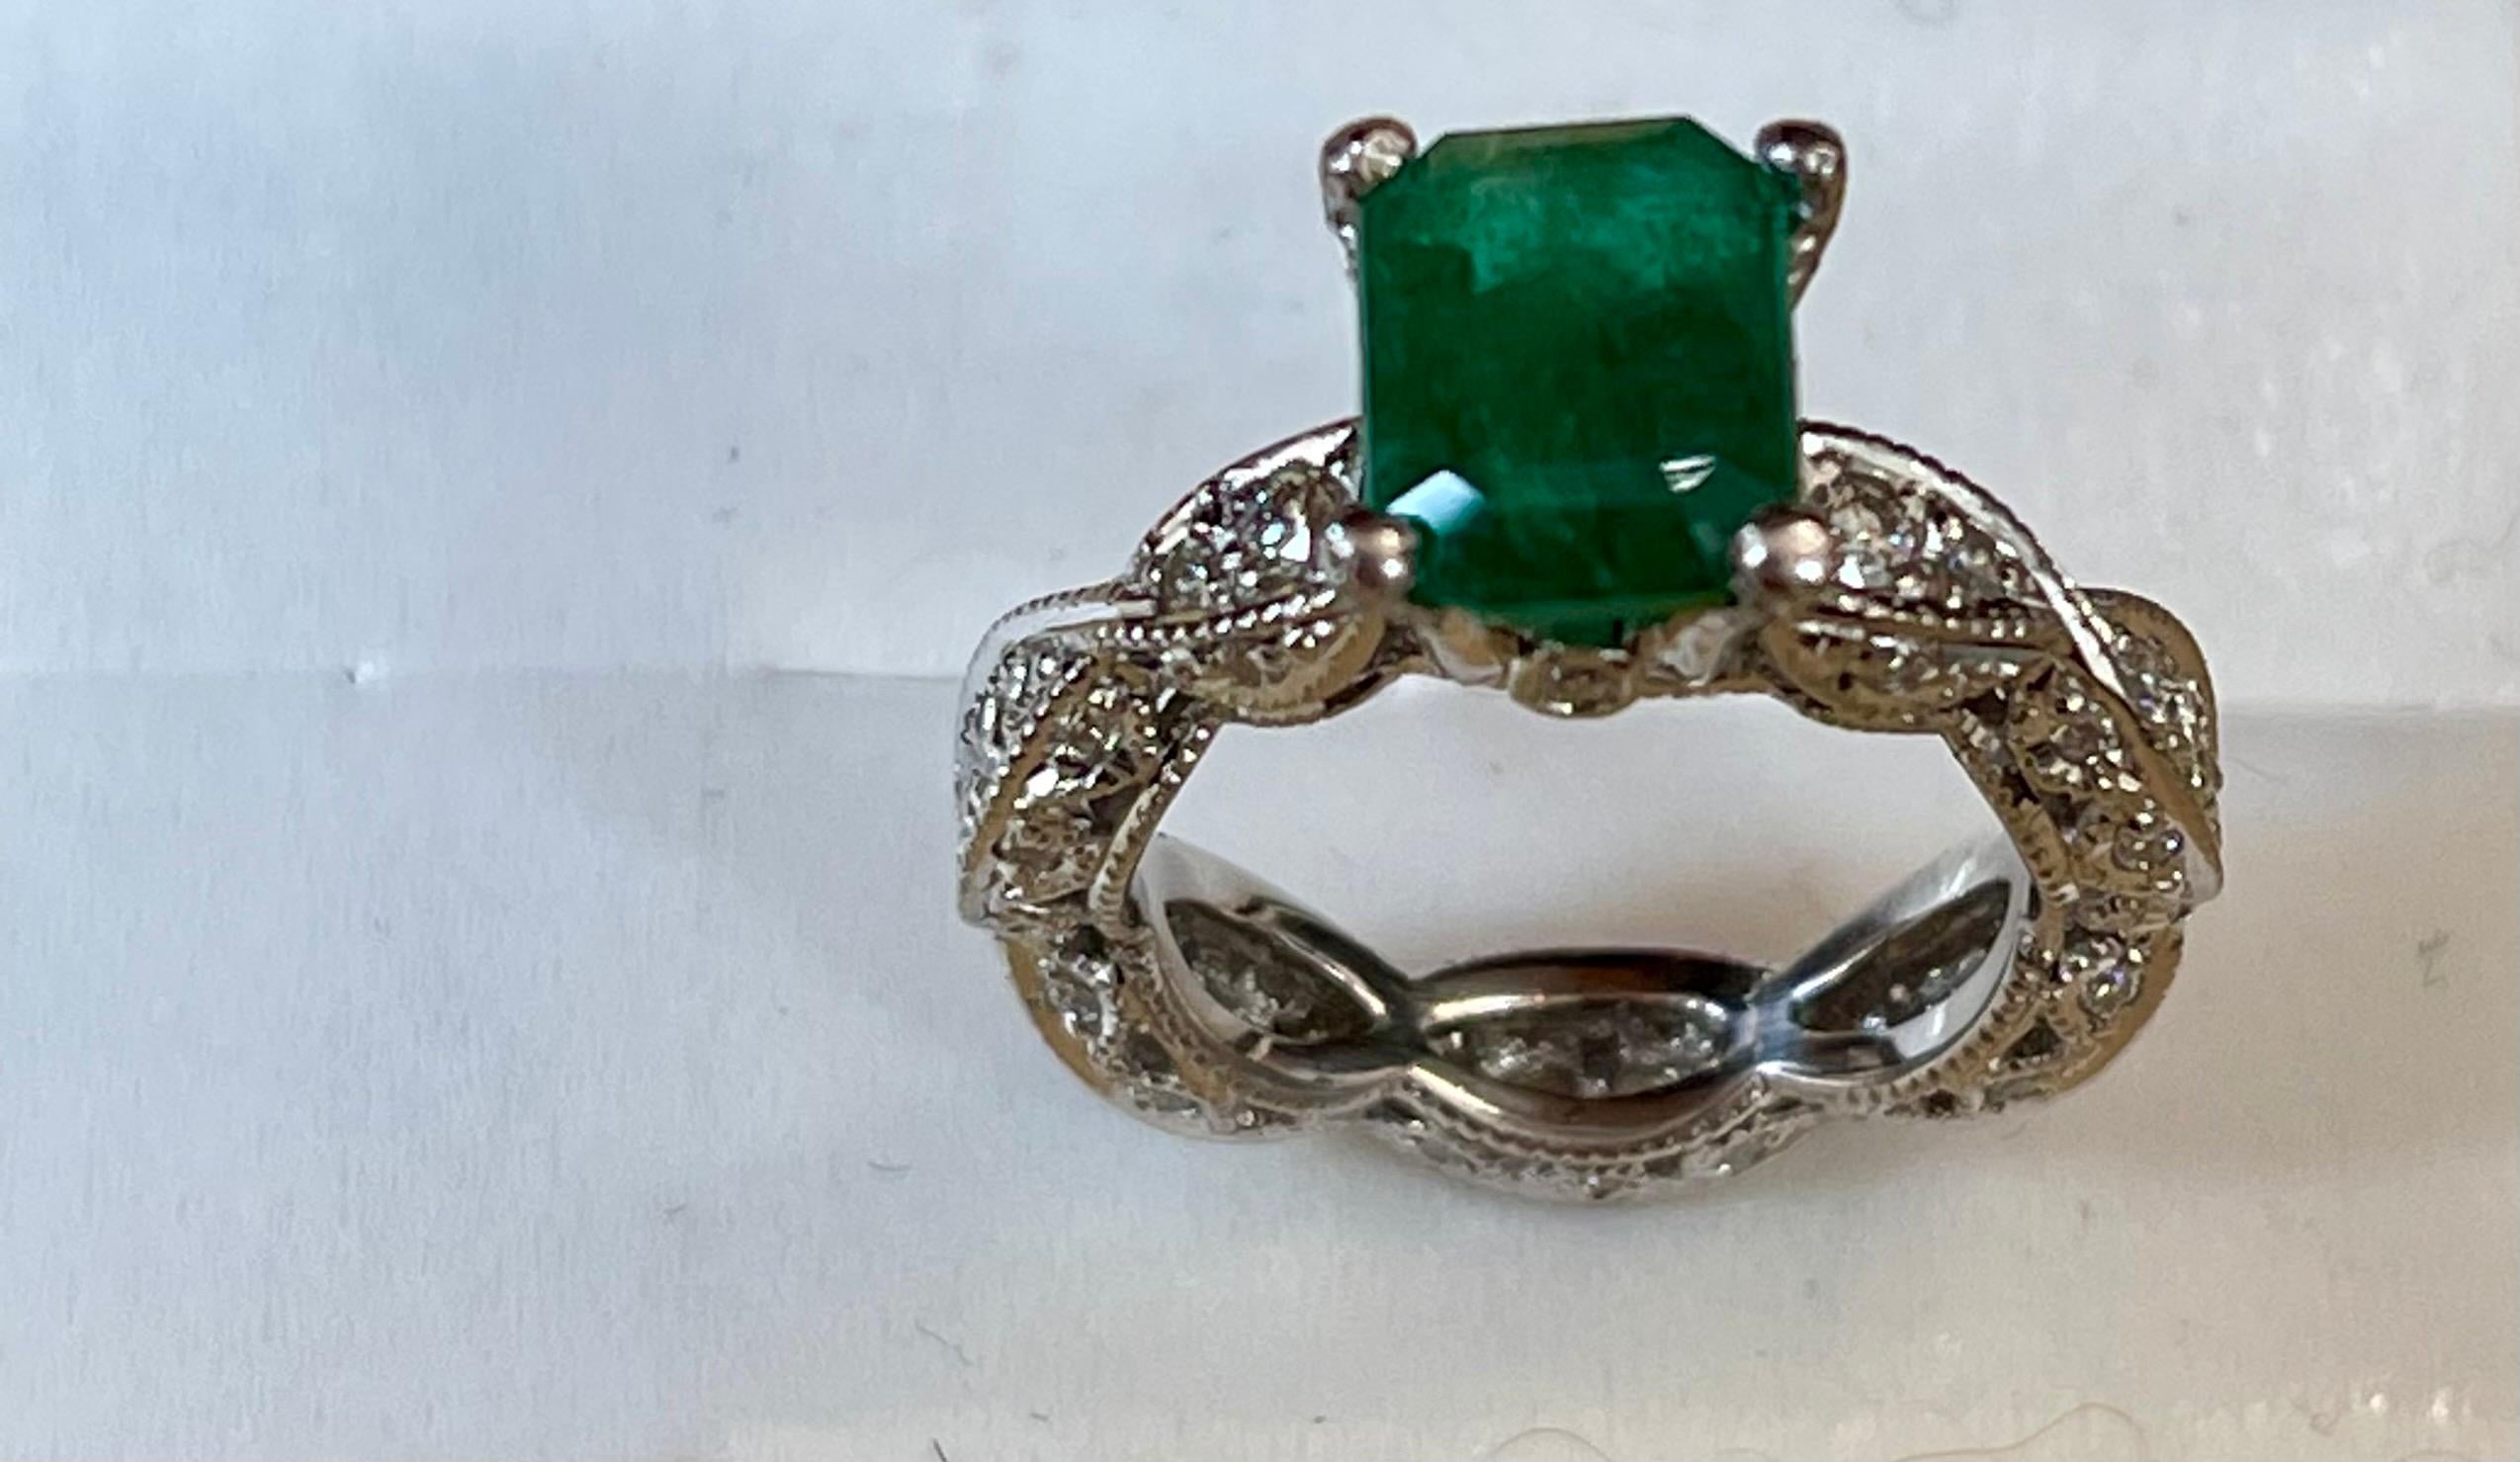 2 Karat Natürlicher Smaragdschliff Smaragd    & 0,85 Ct  Diamantring in Platin Größe 3.75
Ich verkaufe diesen Ring zu einem sehr günstigen Preis.
Ungefähr  2  Karat Natürlich  Smaragd & Diamant Ring  in Platin
Intensive grüne Farbe, schöner Stein